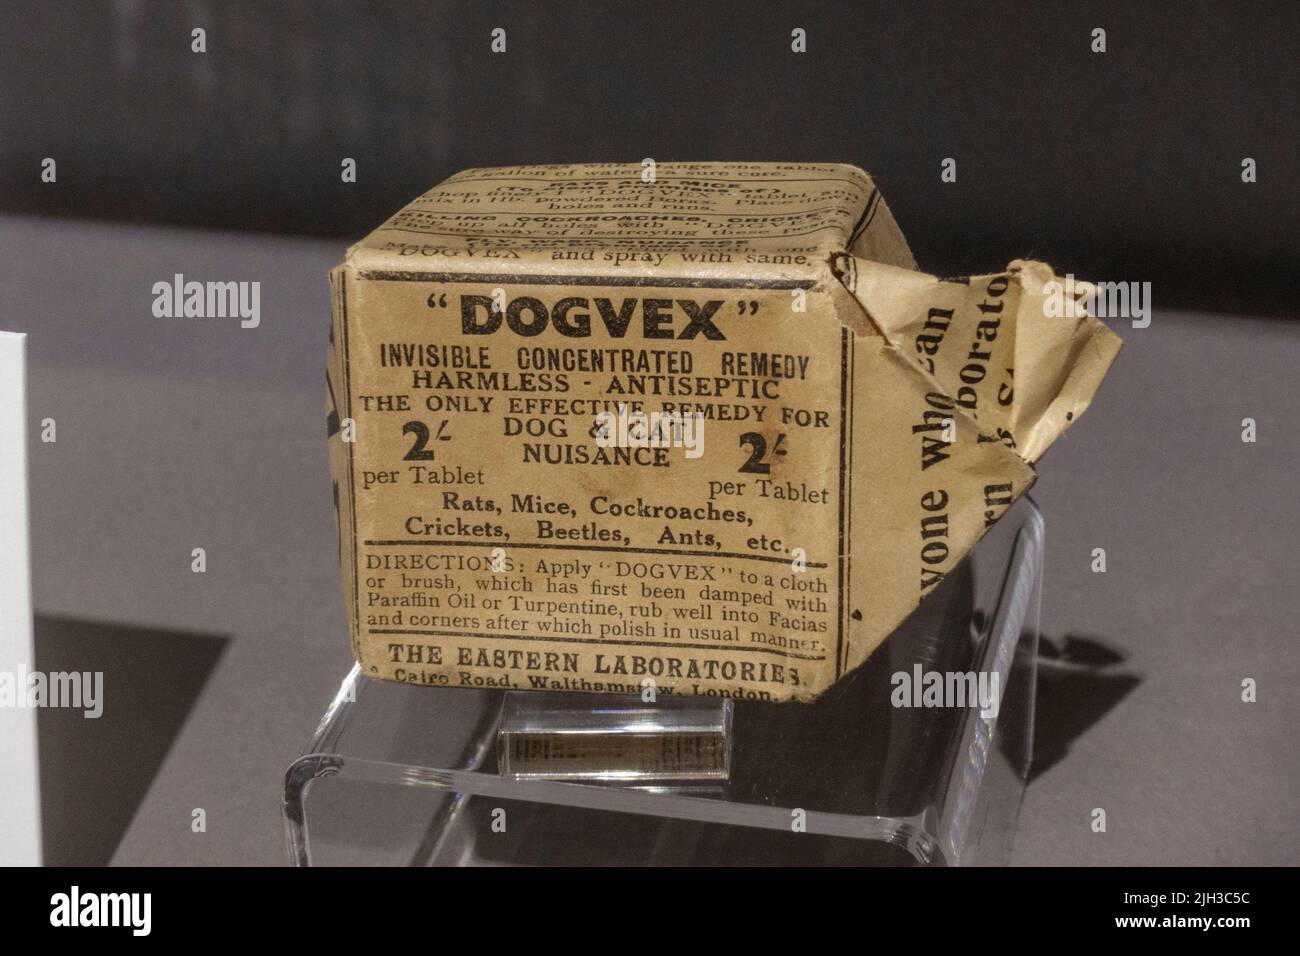 Remedio concentrado invisible Dogvex (c 1920s) expuesto en el Museo Thackray de Medicina, Leeds, Reino Unido. Foto de stock